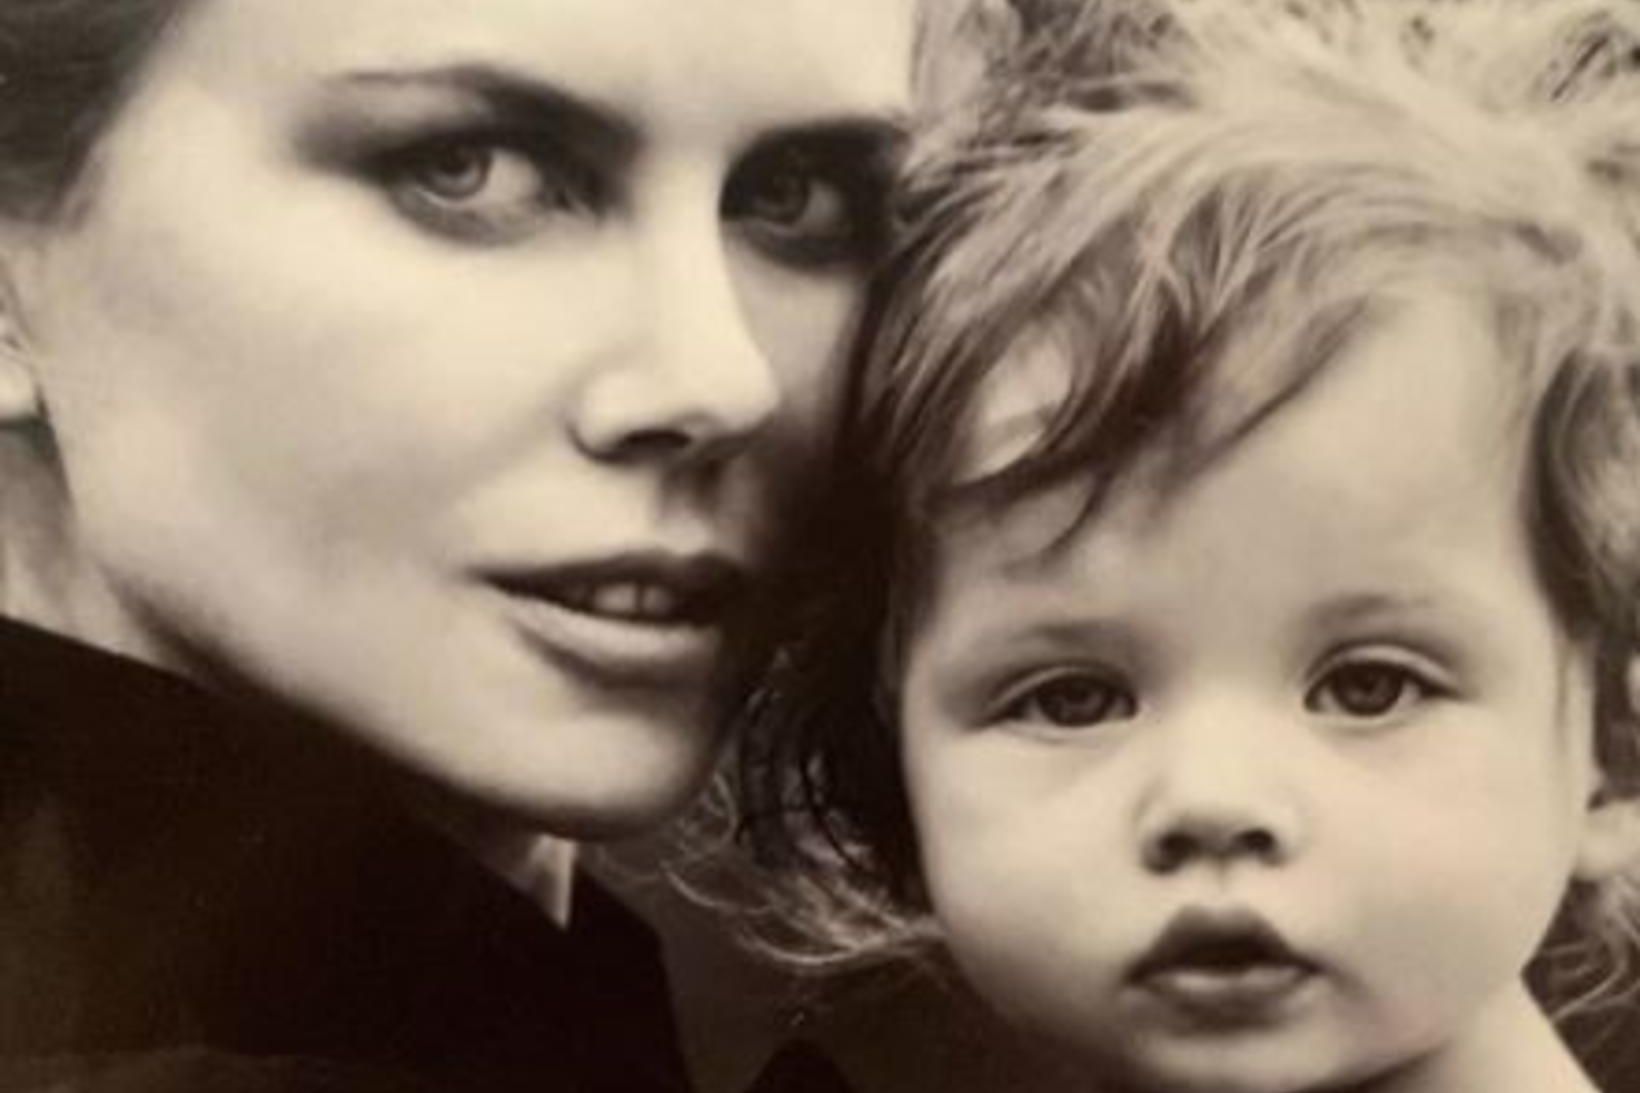 Nicole Kidman birti mynd af sér og dóttur sinni í …